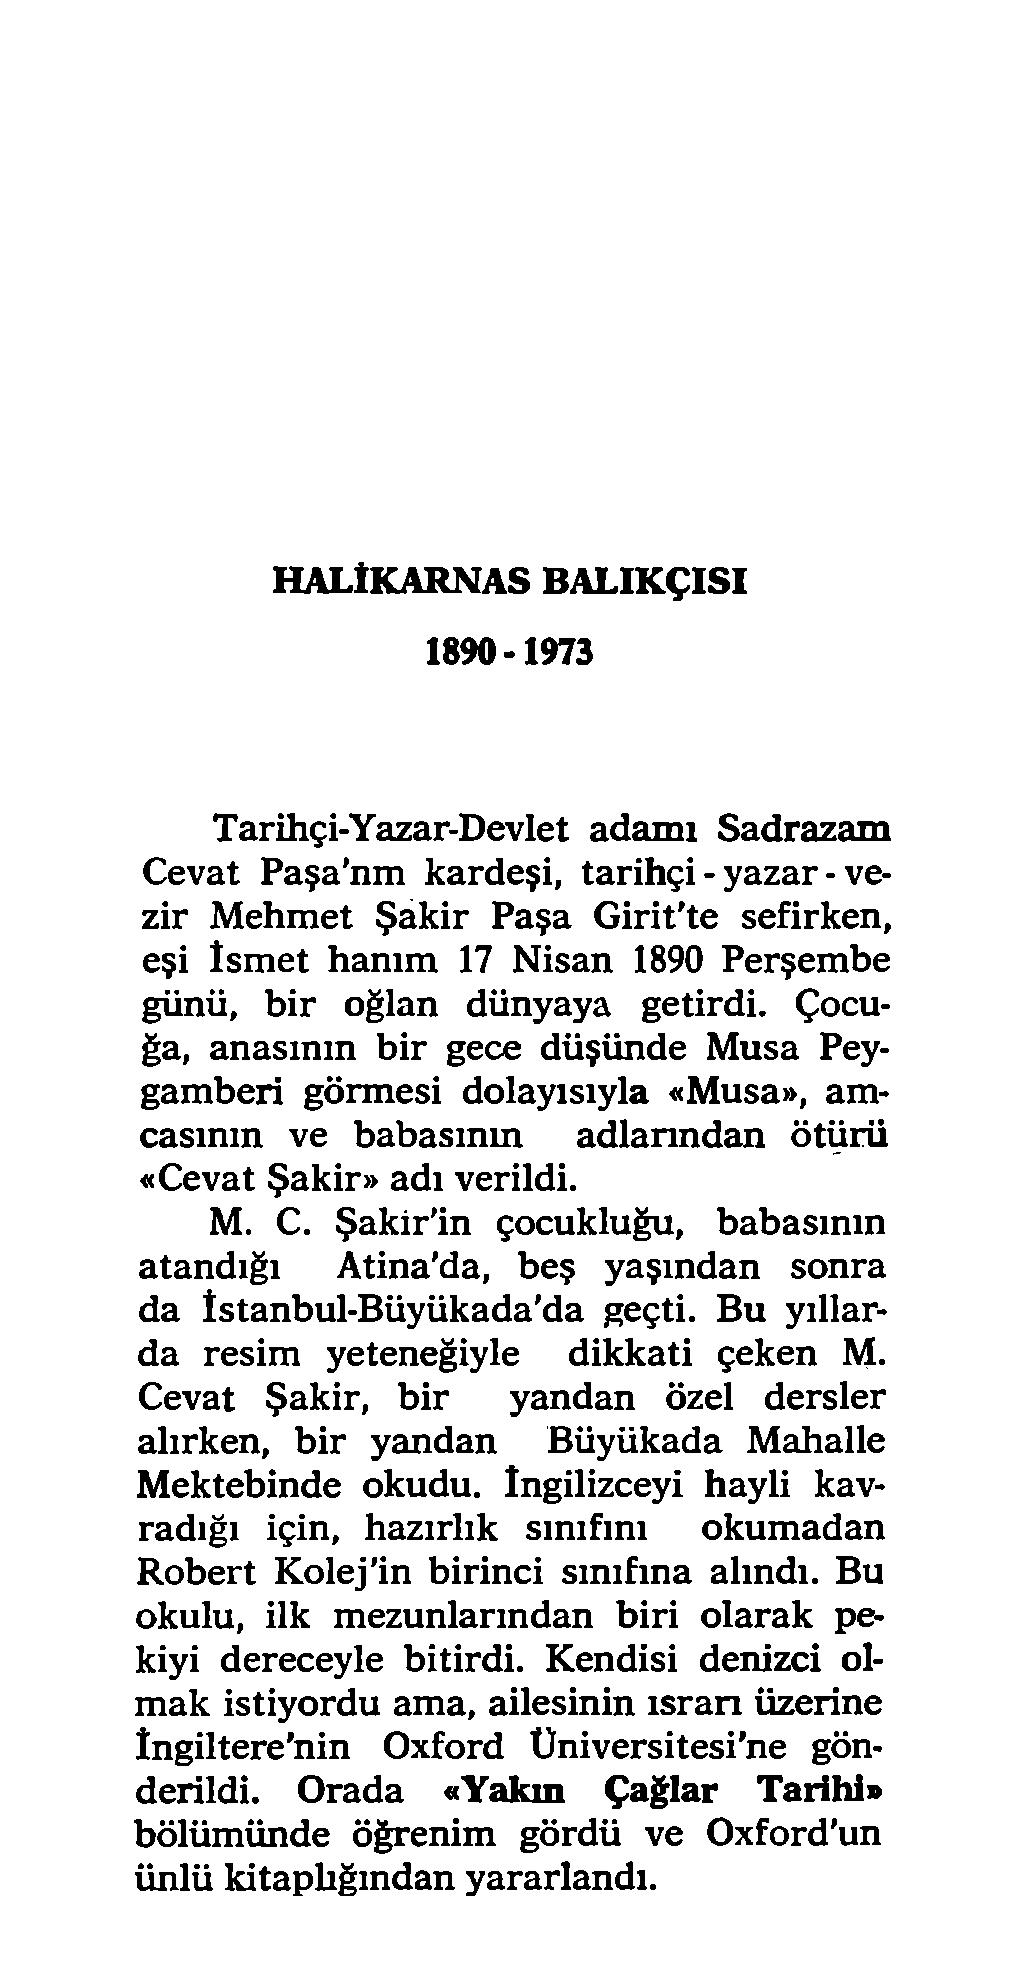 HALtKARNAS BALIKÇISI 1890-1973 Tarihçi-Yazar-Devlet adamı Sadrazam Cevat Paşa nm kardeşi, tarihçi - yazar - vezir Mehmet Şakir Paşa Girit'te sefirken, eşi İsmet hanım 17 Nisan 1890 Perşembe günü, bir